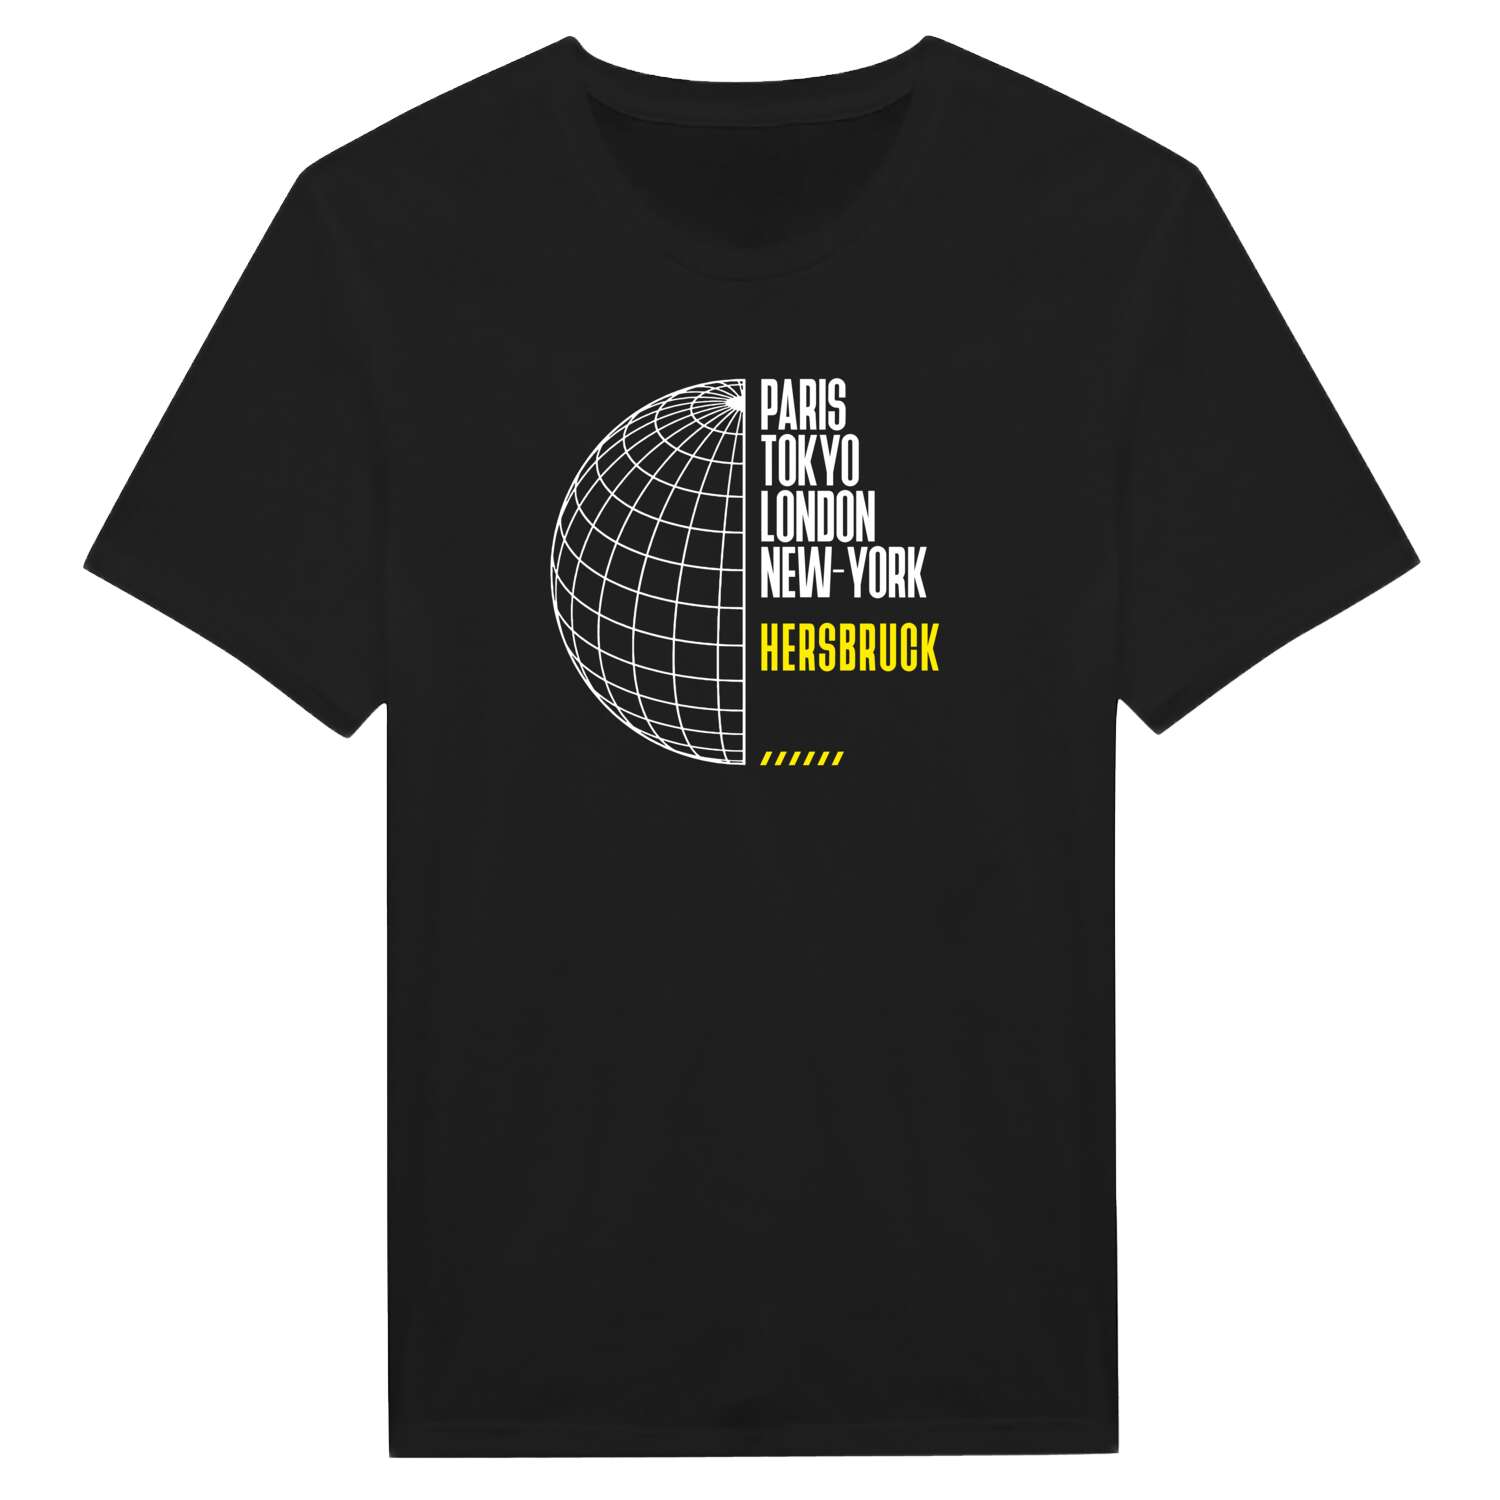 Hersbruck T-Shirt »Paris Tokyo London«